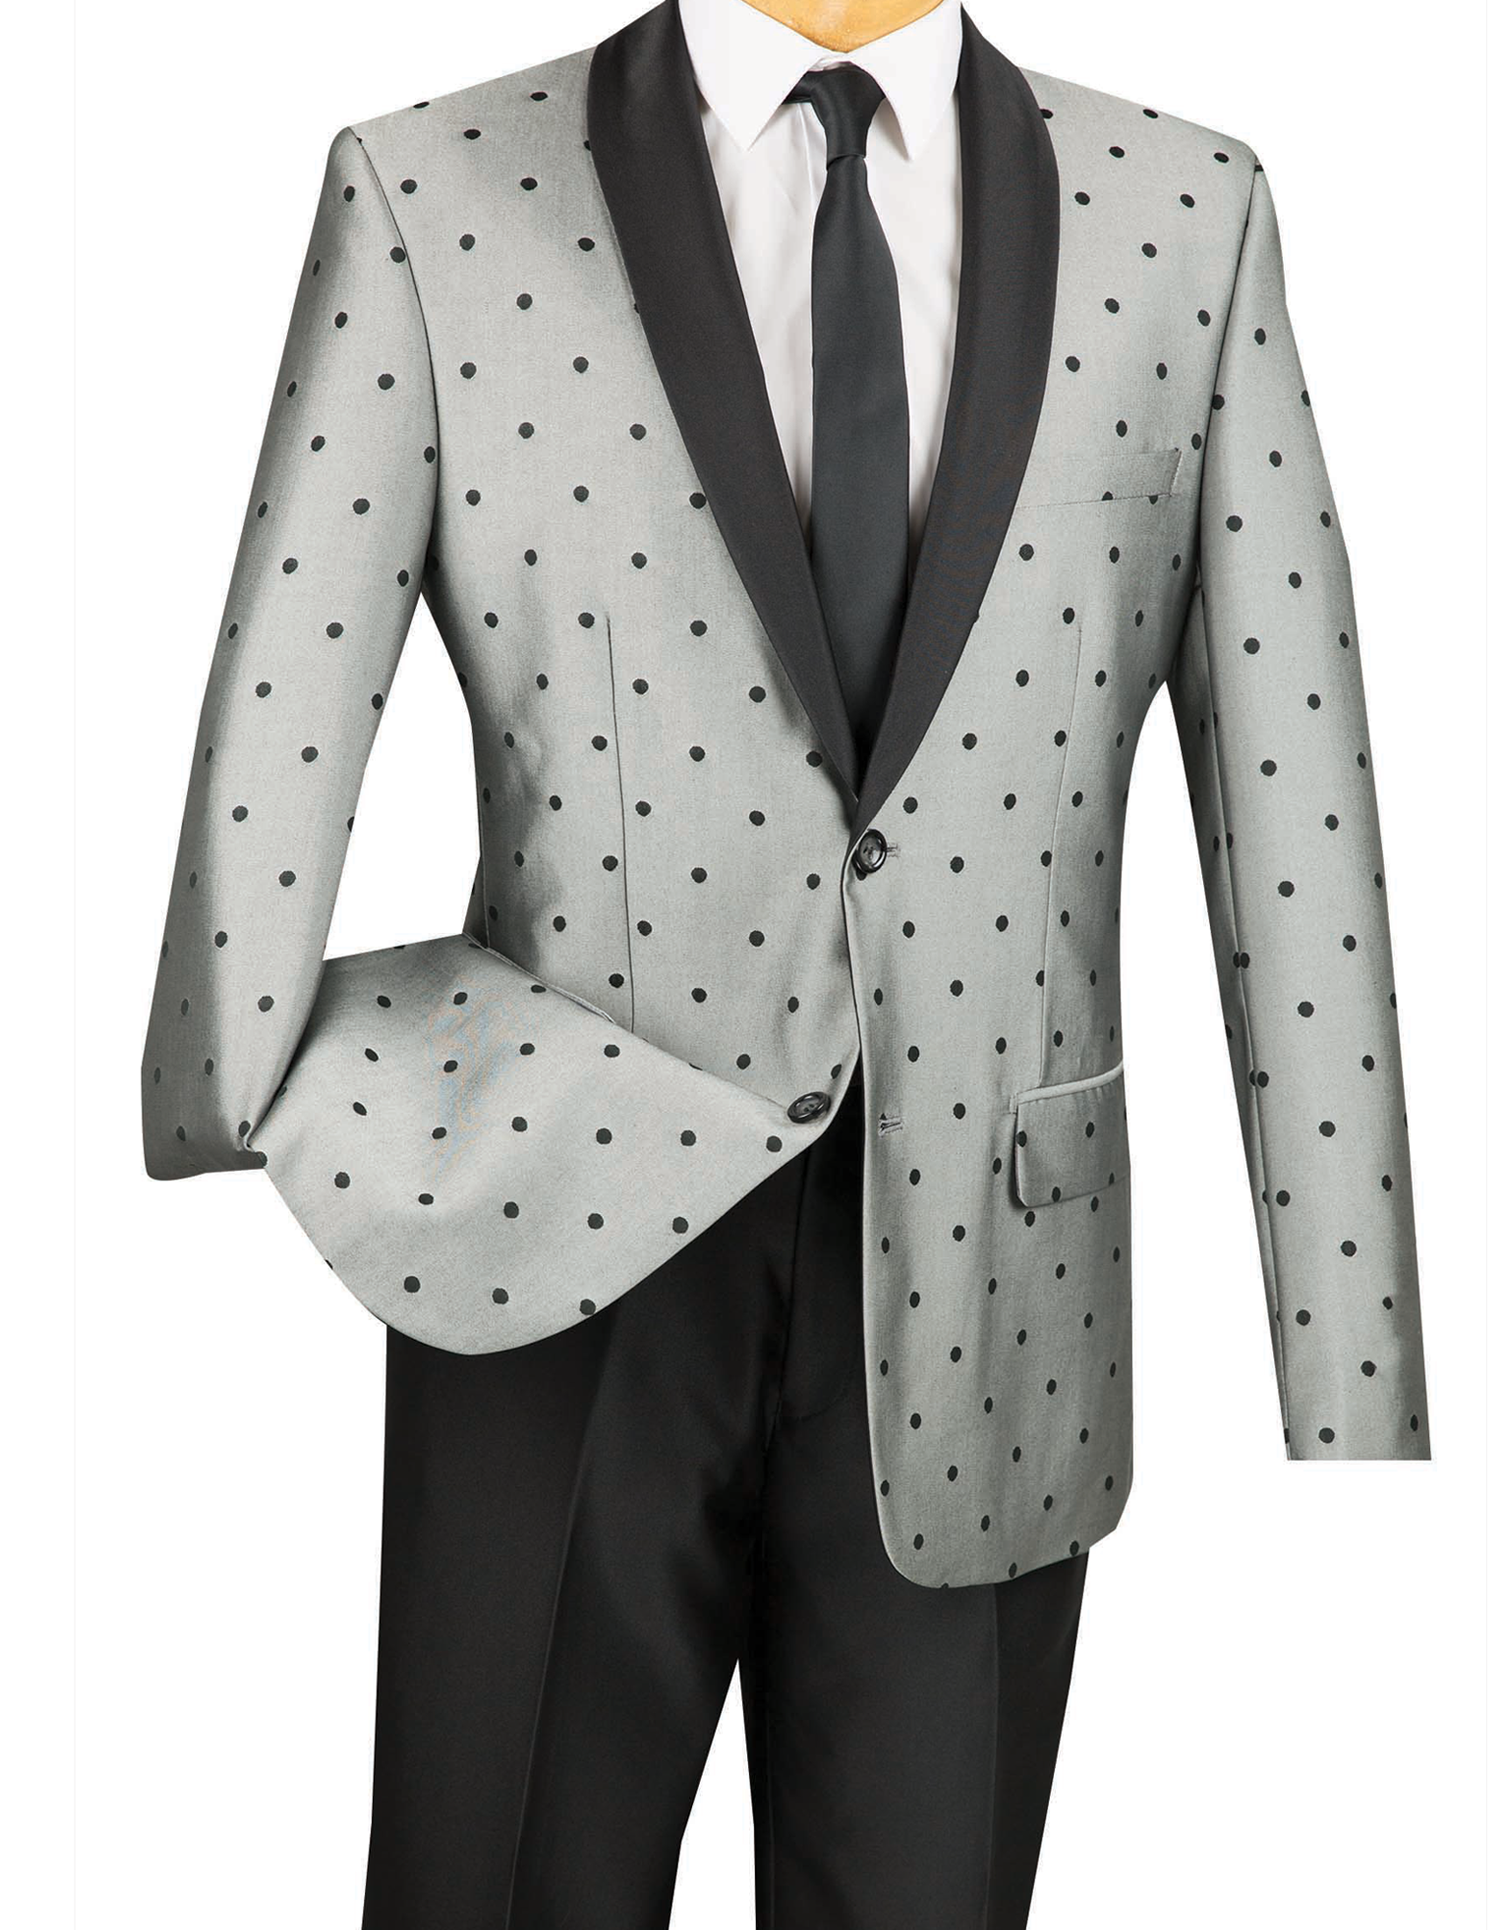 Naples Collezioni - Polka Dots Fashion Suit 2 Buttons 2 Piece Slim Fit Gray